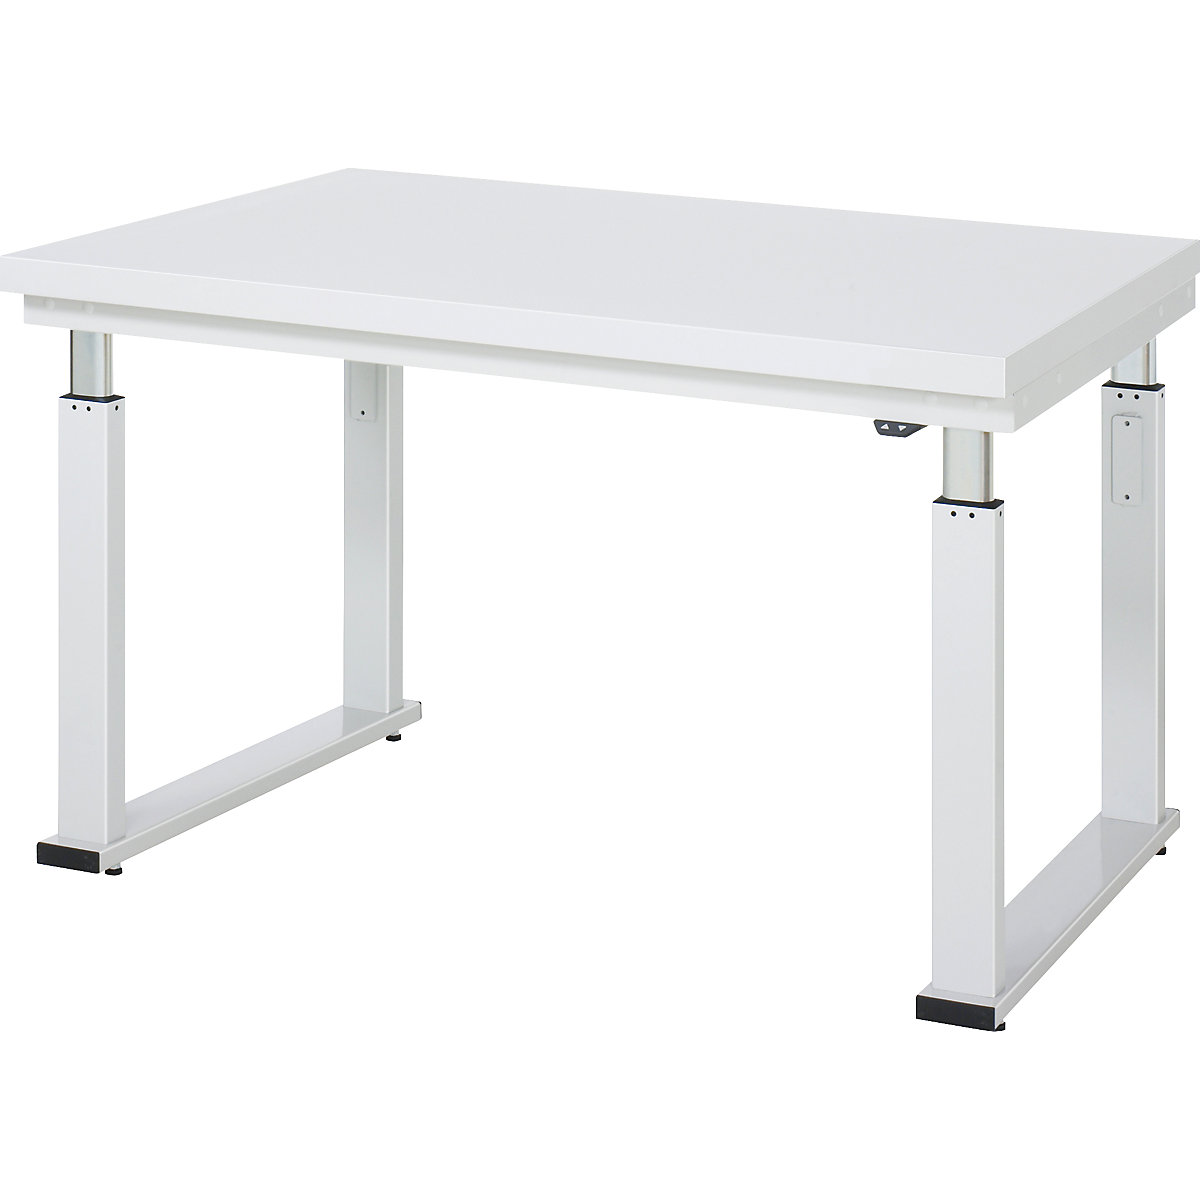 Psací stůl s elektrickým přestavováním výšky – RAU, deska z tvrdého laminátu, nosnost 600 kg, š x h 1250 x 900 mm-16